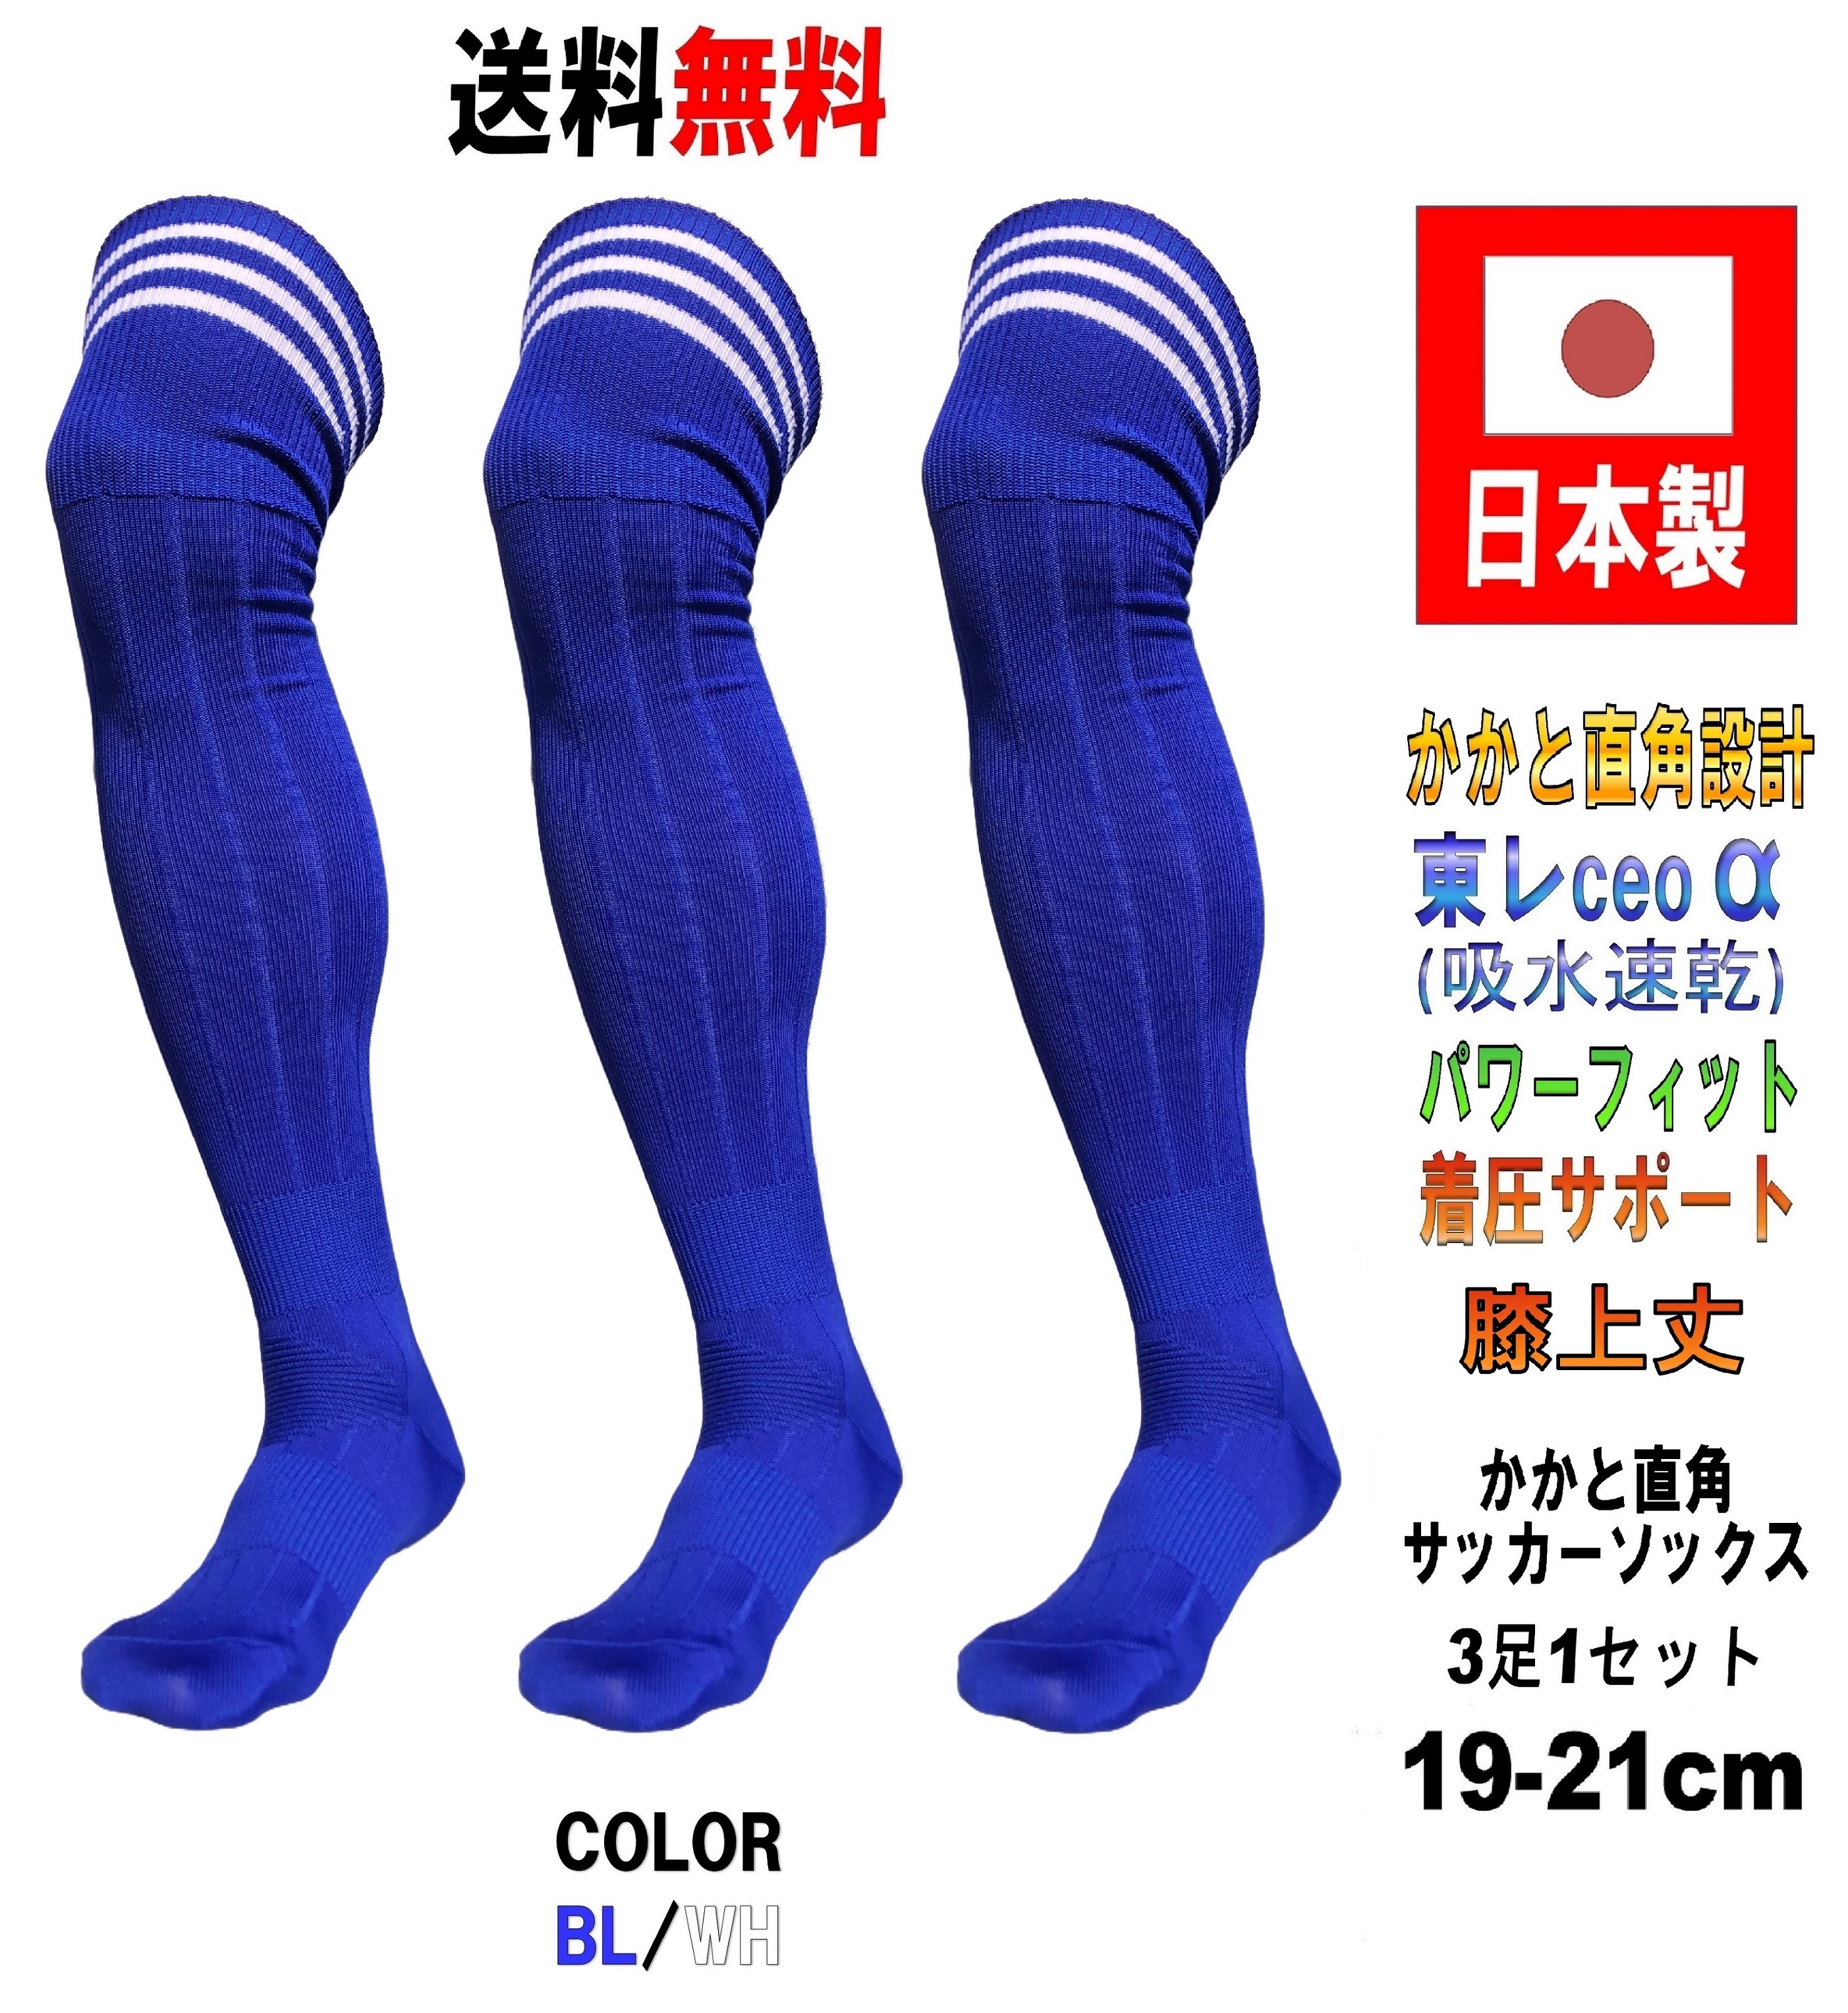 日本製 サッカーソックス BL/WH 3足セット 3サイズ 膝上丈